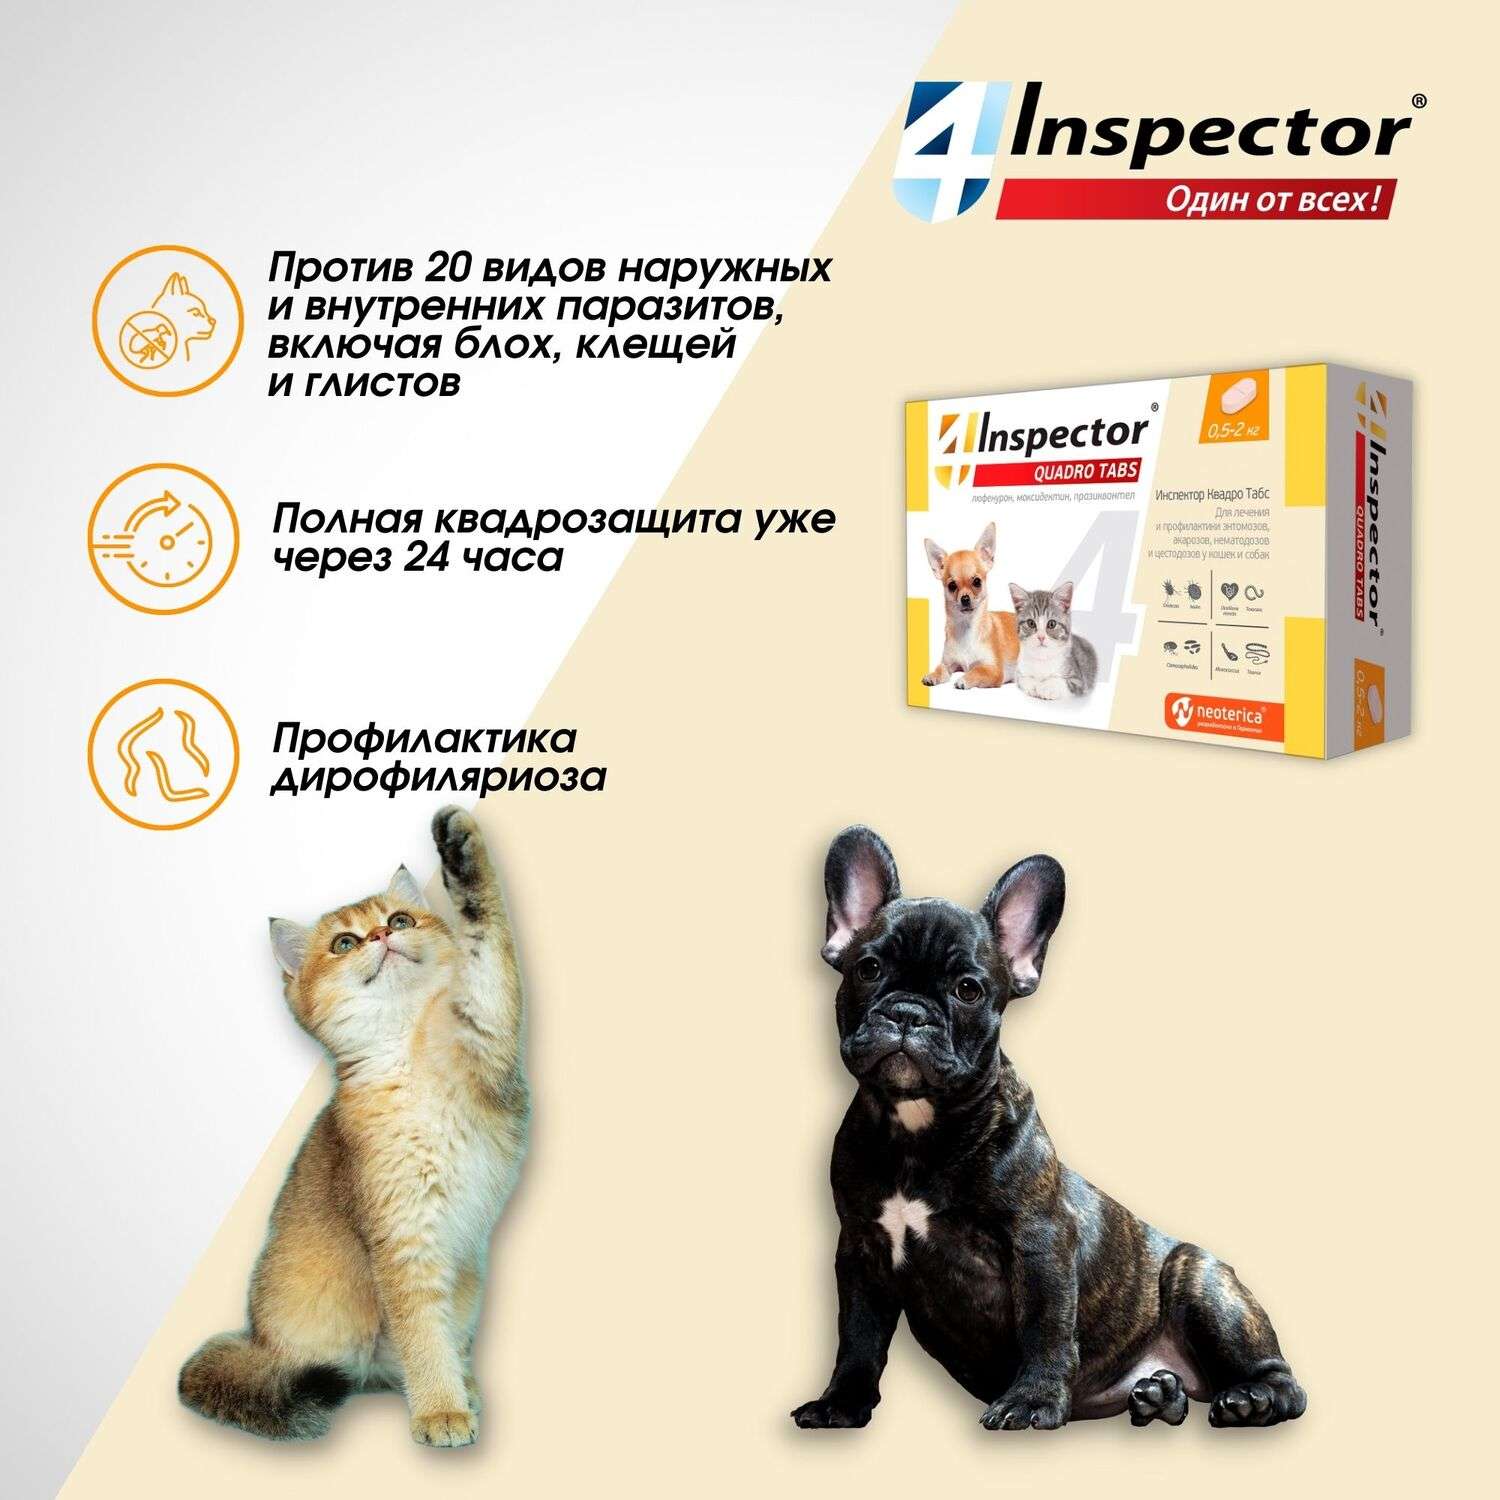 Таблетки от клещей inspector отзывы. Inspector Quadro таблетки для собак 2-8 кг. Таблетки от клещей для собак инспектор. Таблетки для глистов инспектор для собак. Таблетки и от блох и от глистов для собак.